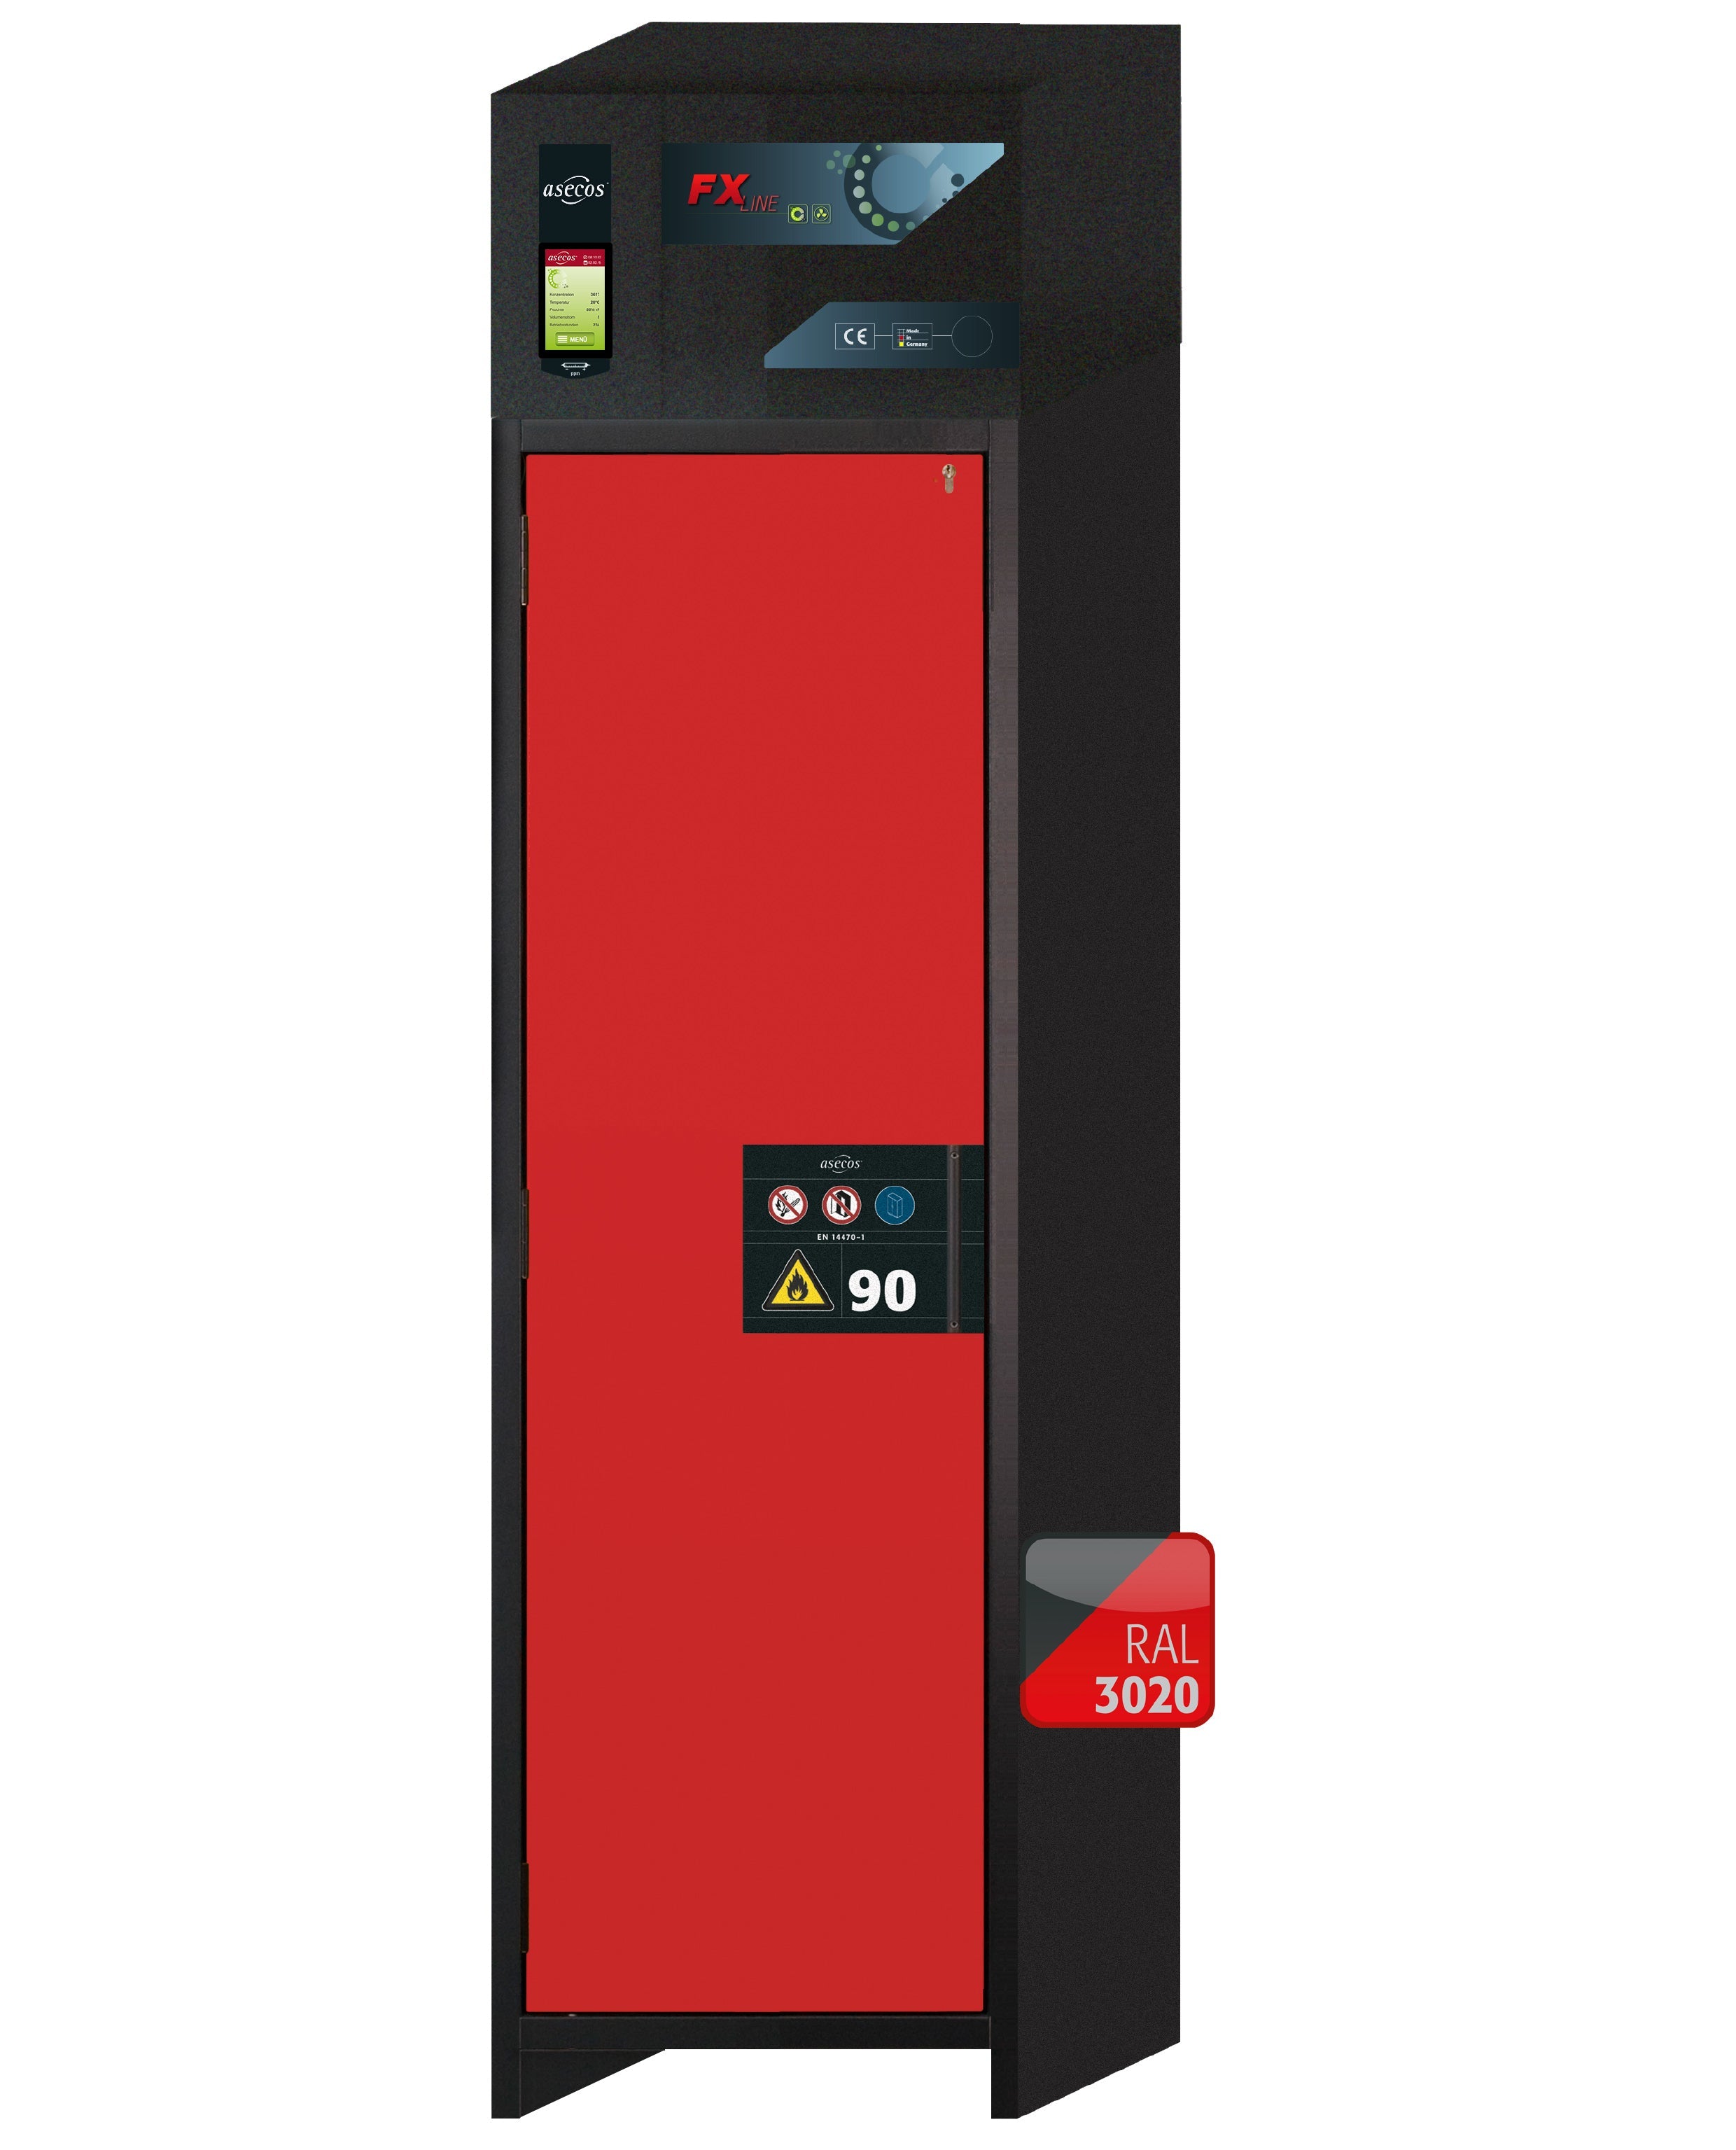 Armoire de filtration d'air de recirculation de type 90 FX-PEGASUS-90 modèle FX90.229.060.WDAC en rouge signalisation RAL 3020 avec 2x pieds de plateau standard (polypropylène)